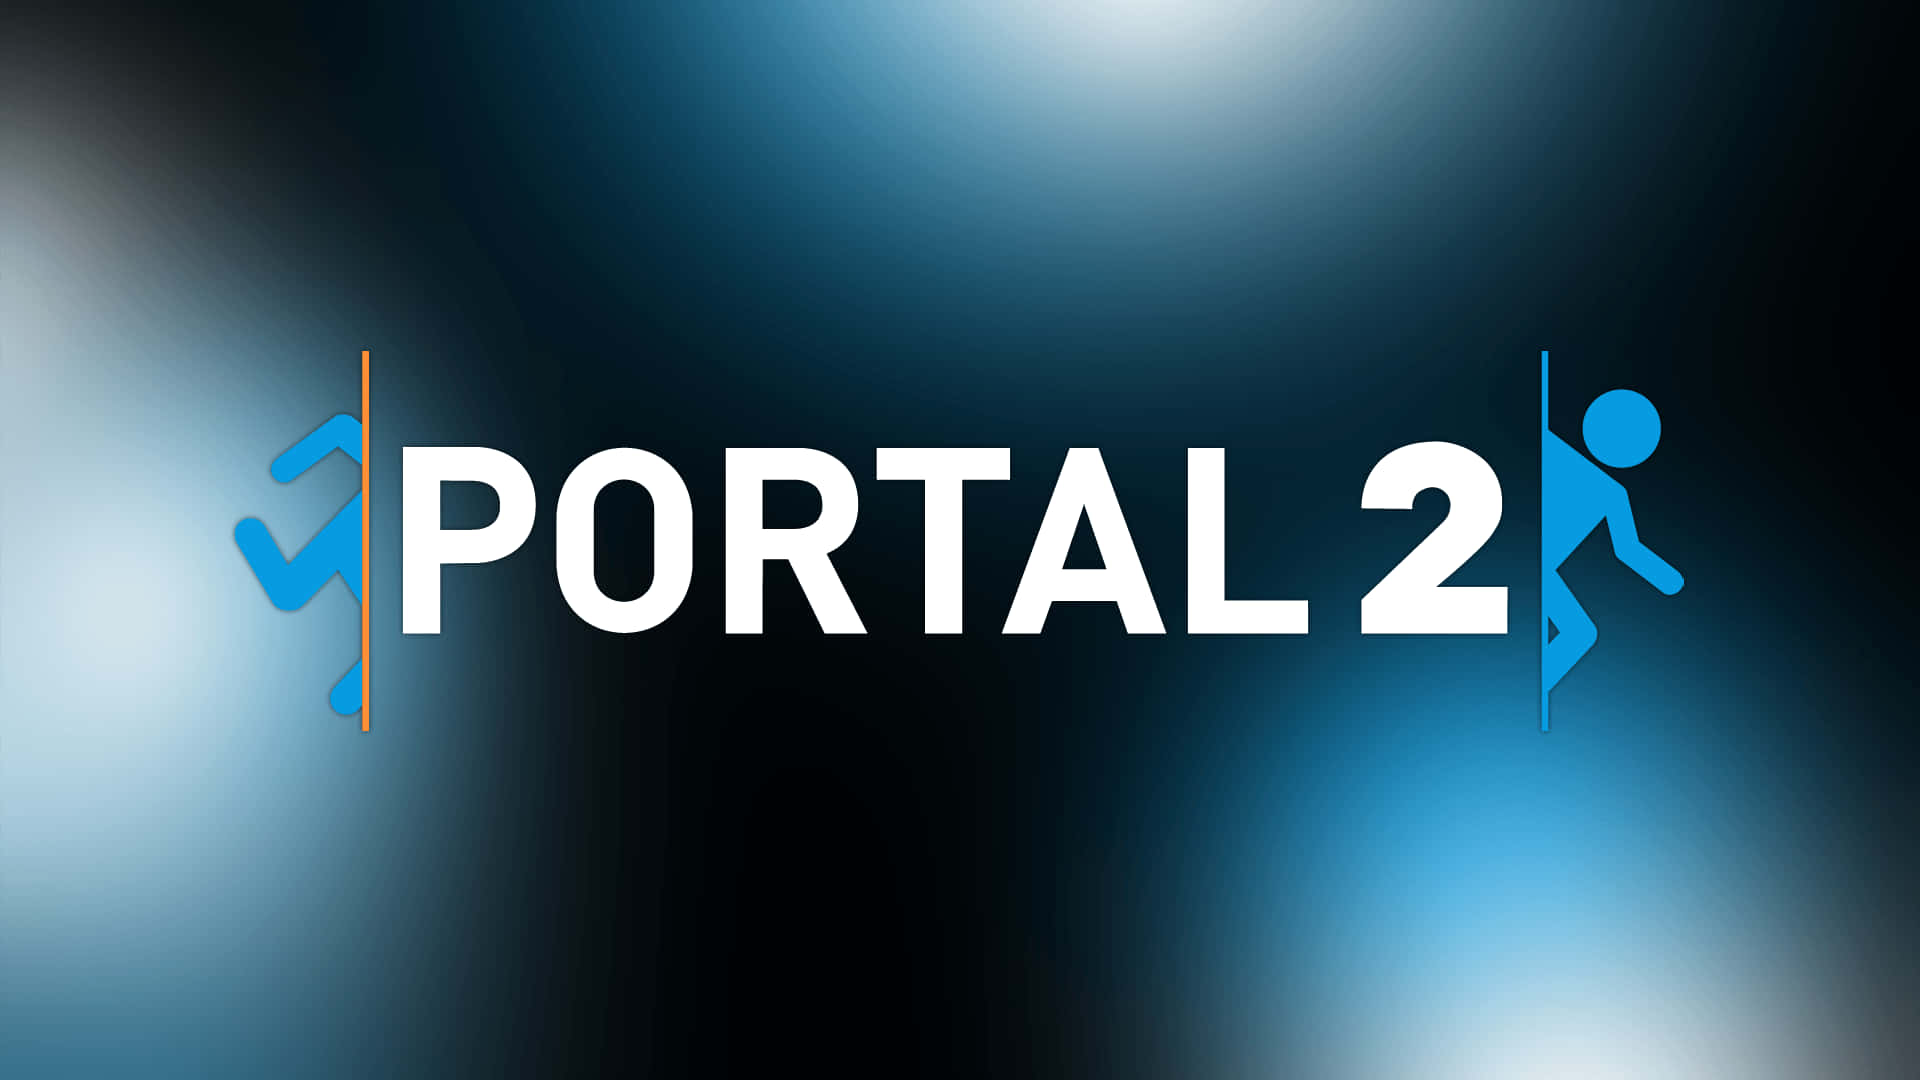 Enöverblick Över Aperture Science Testing Lab Som Visas I Datorspelet Portal 2